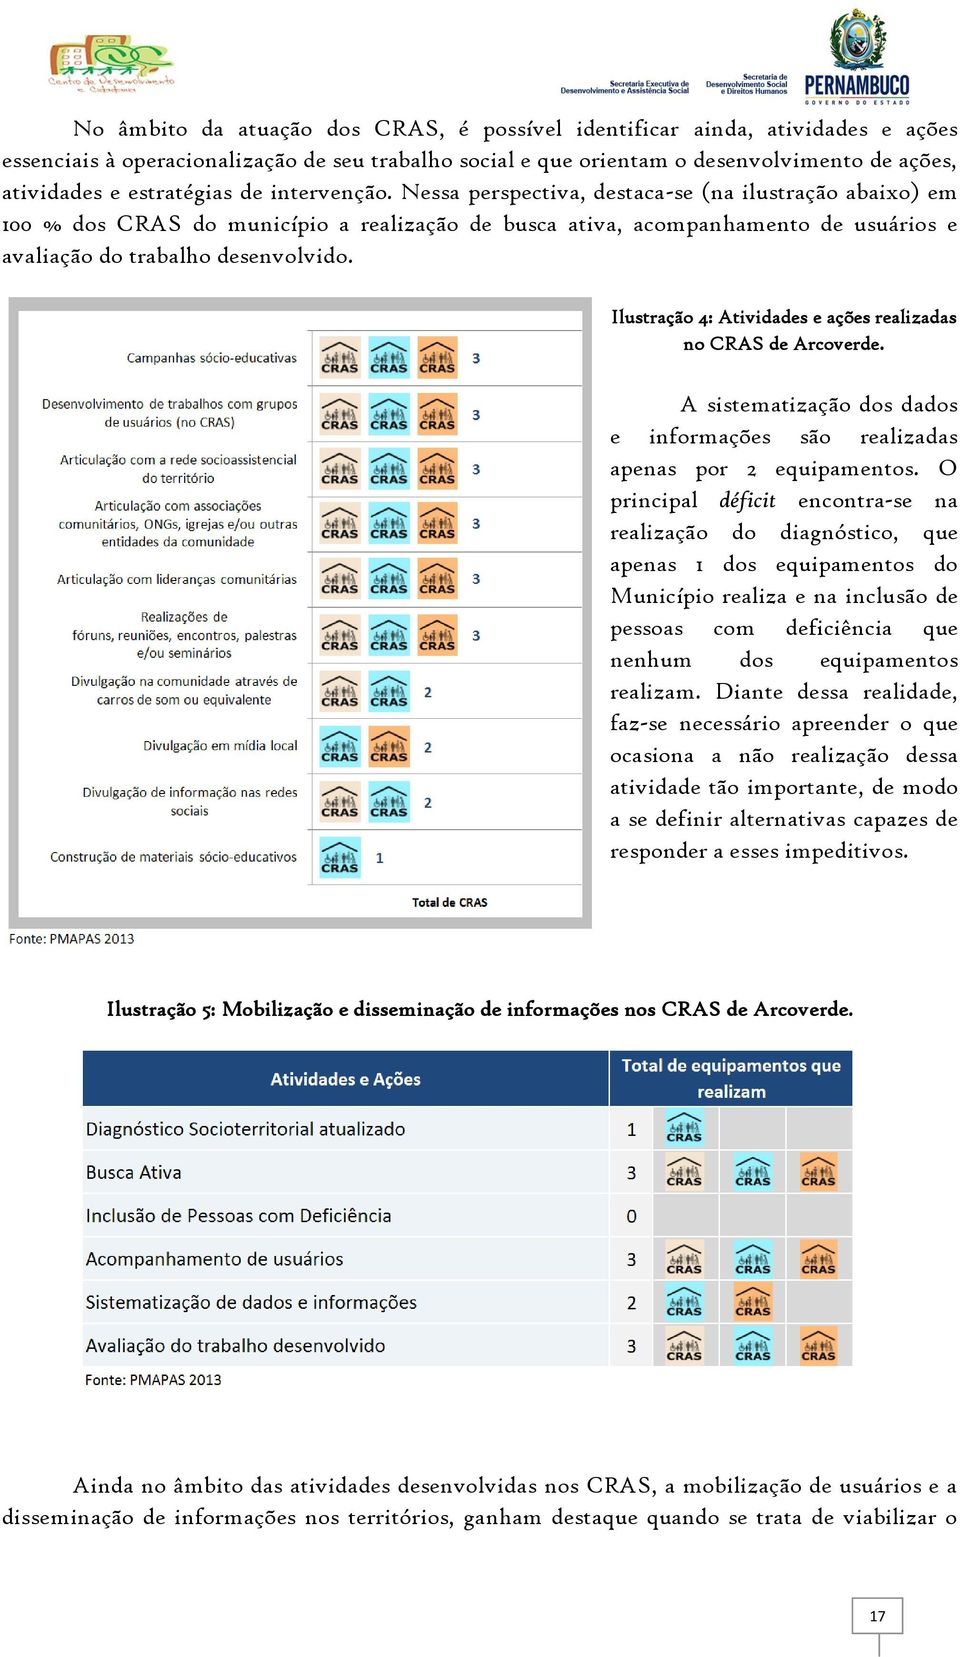 Nessa perspectiva, destaca-se (na ilustração abaixo) em 100 % dos CRAS do município a realização de busca ativa, acompanhamento de usuários e avaliação do trabalho desenvolvido.